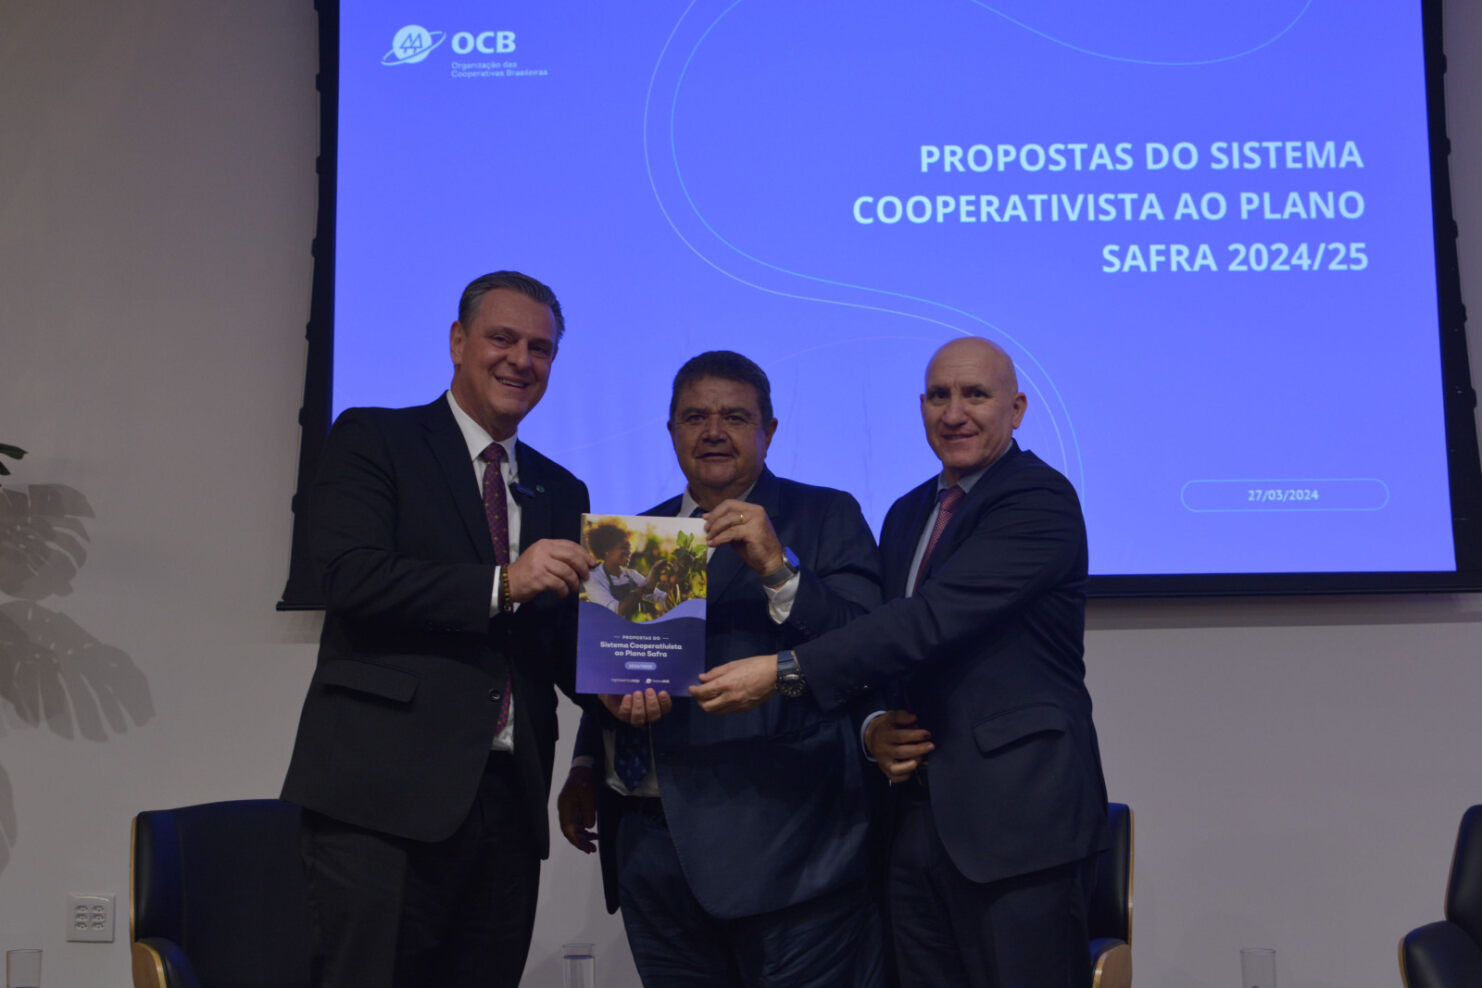  Ministro Carlos Fávaro discute propostas do cooperativismo para o Plano Safra 2024/25